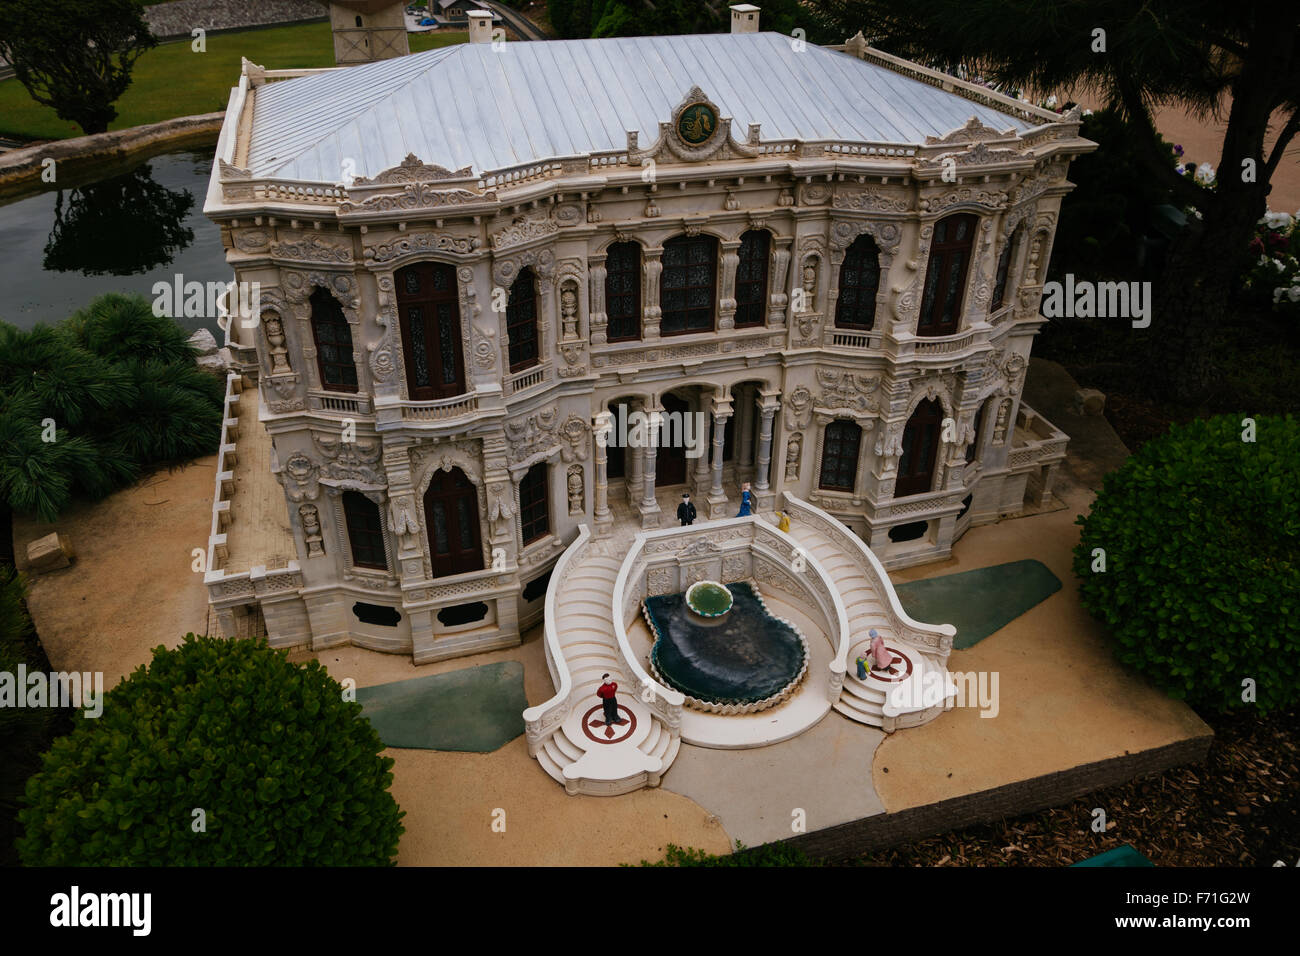 La Turchia Kucuksu Pavillion il Palazzo Estivo di replica in miniatura Foto Stock